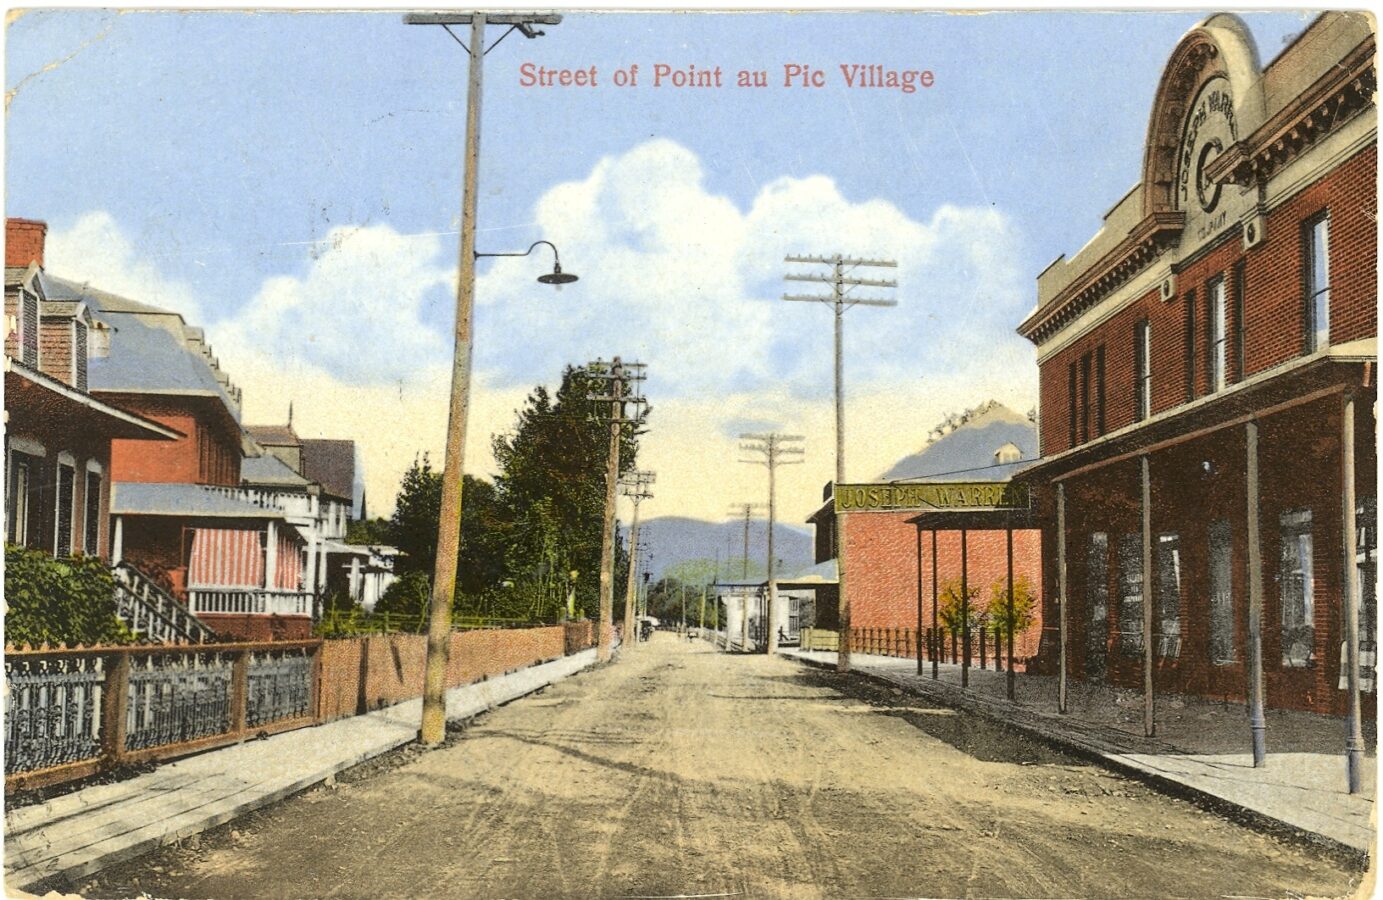 Une carte postale de Pointe-au-Pic envoyée en 1913